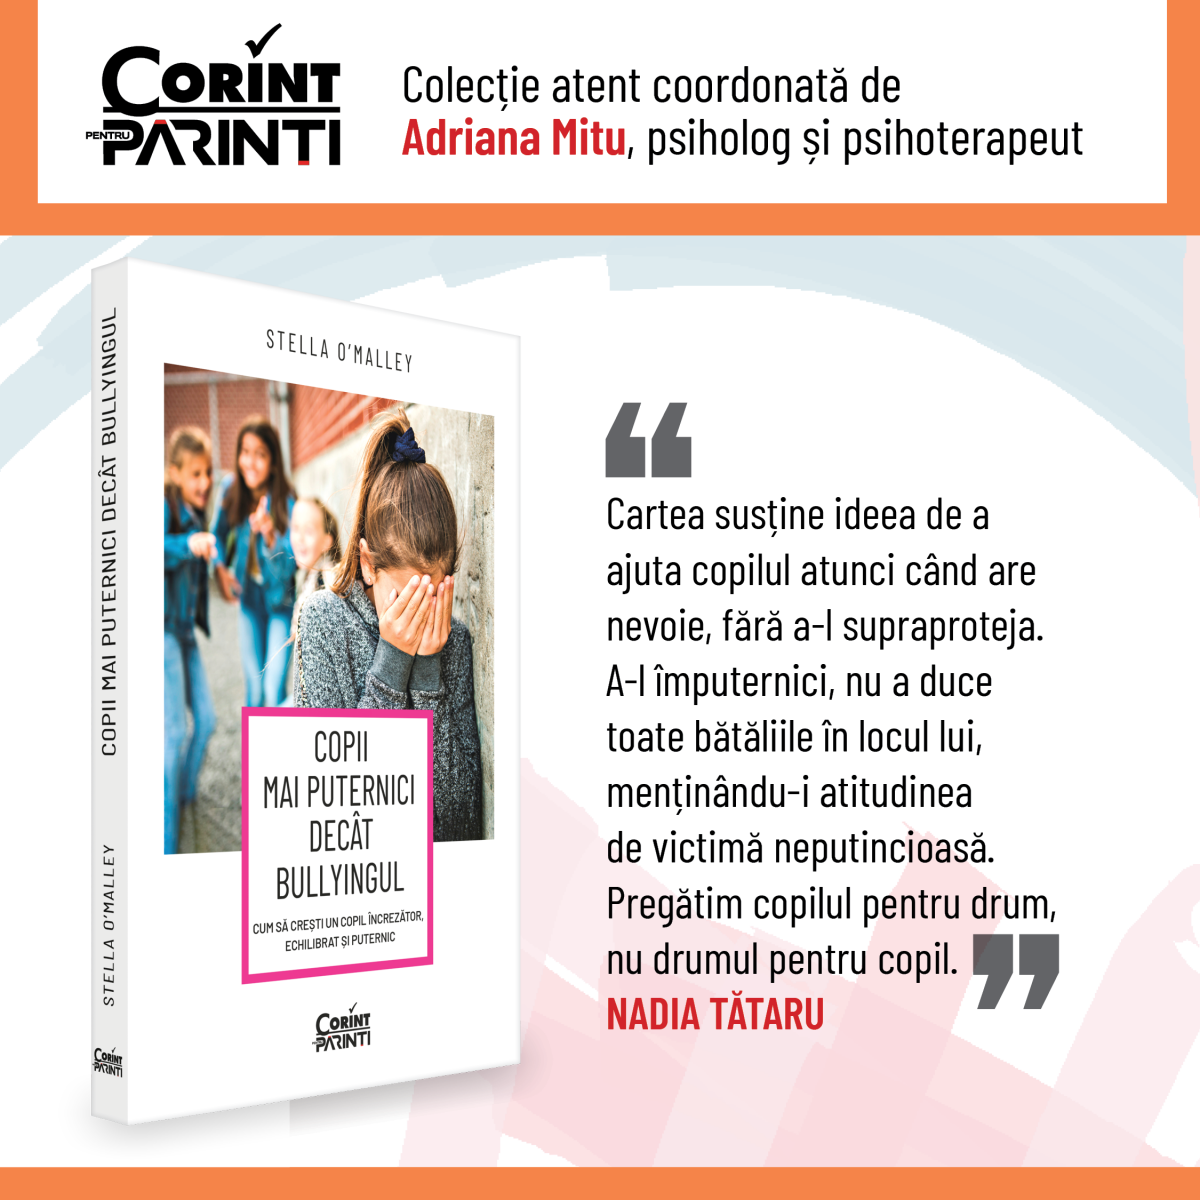 Grupul Editorial Corint lansează colecția Corint pentru părinți